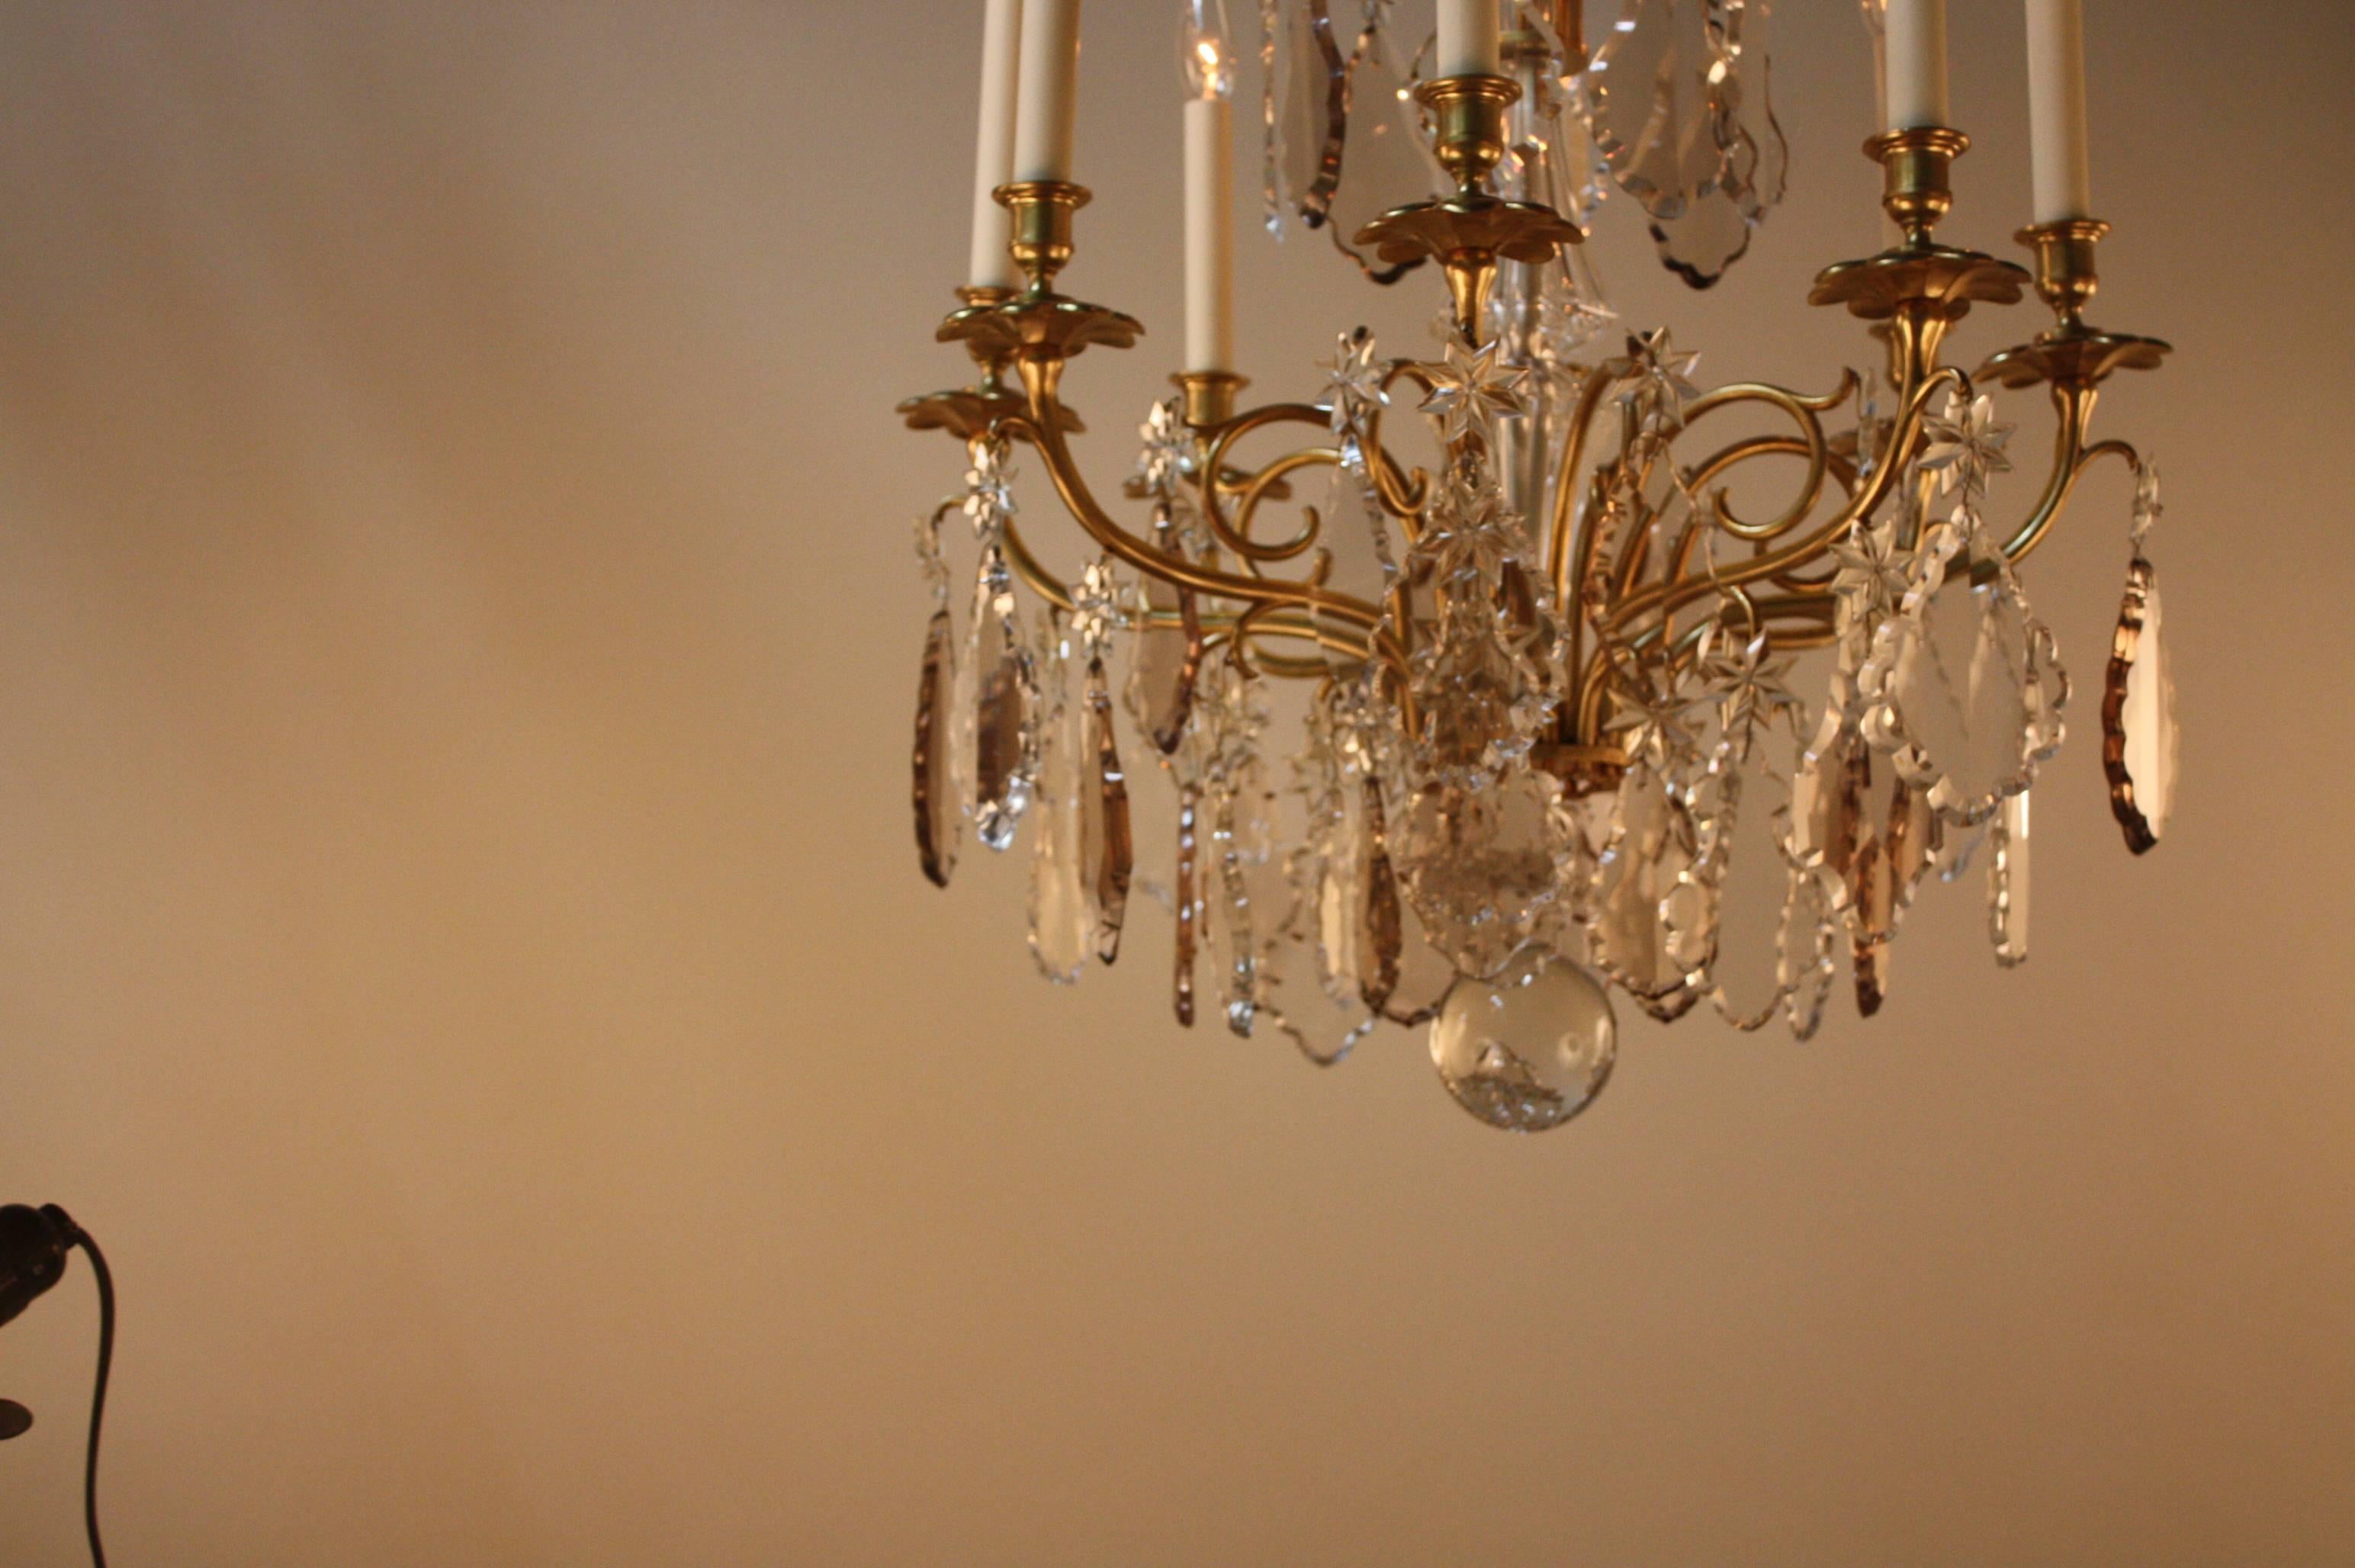 Elegant 1930s eight-light bronze chandelier with large sparkling hand polished multi-color crystal prisms.
Measurement: 22